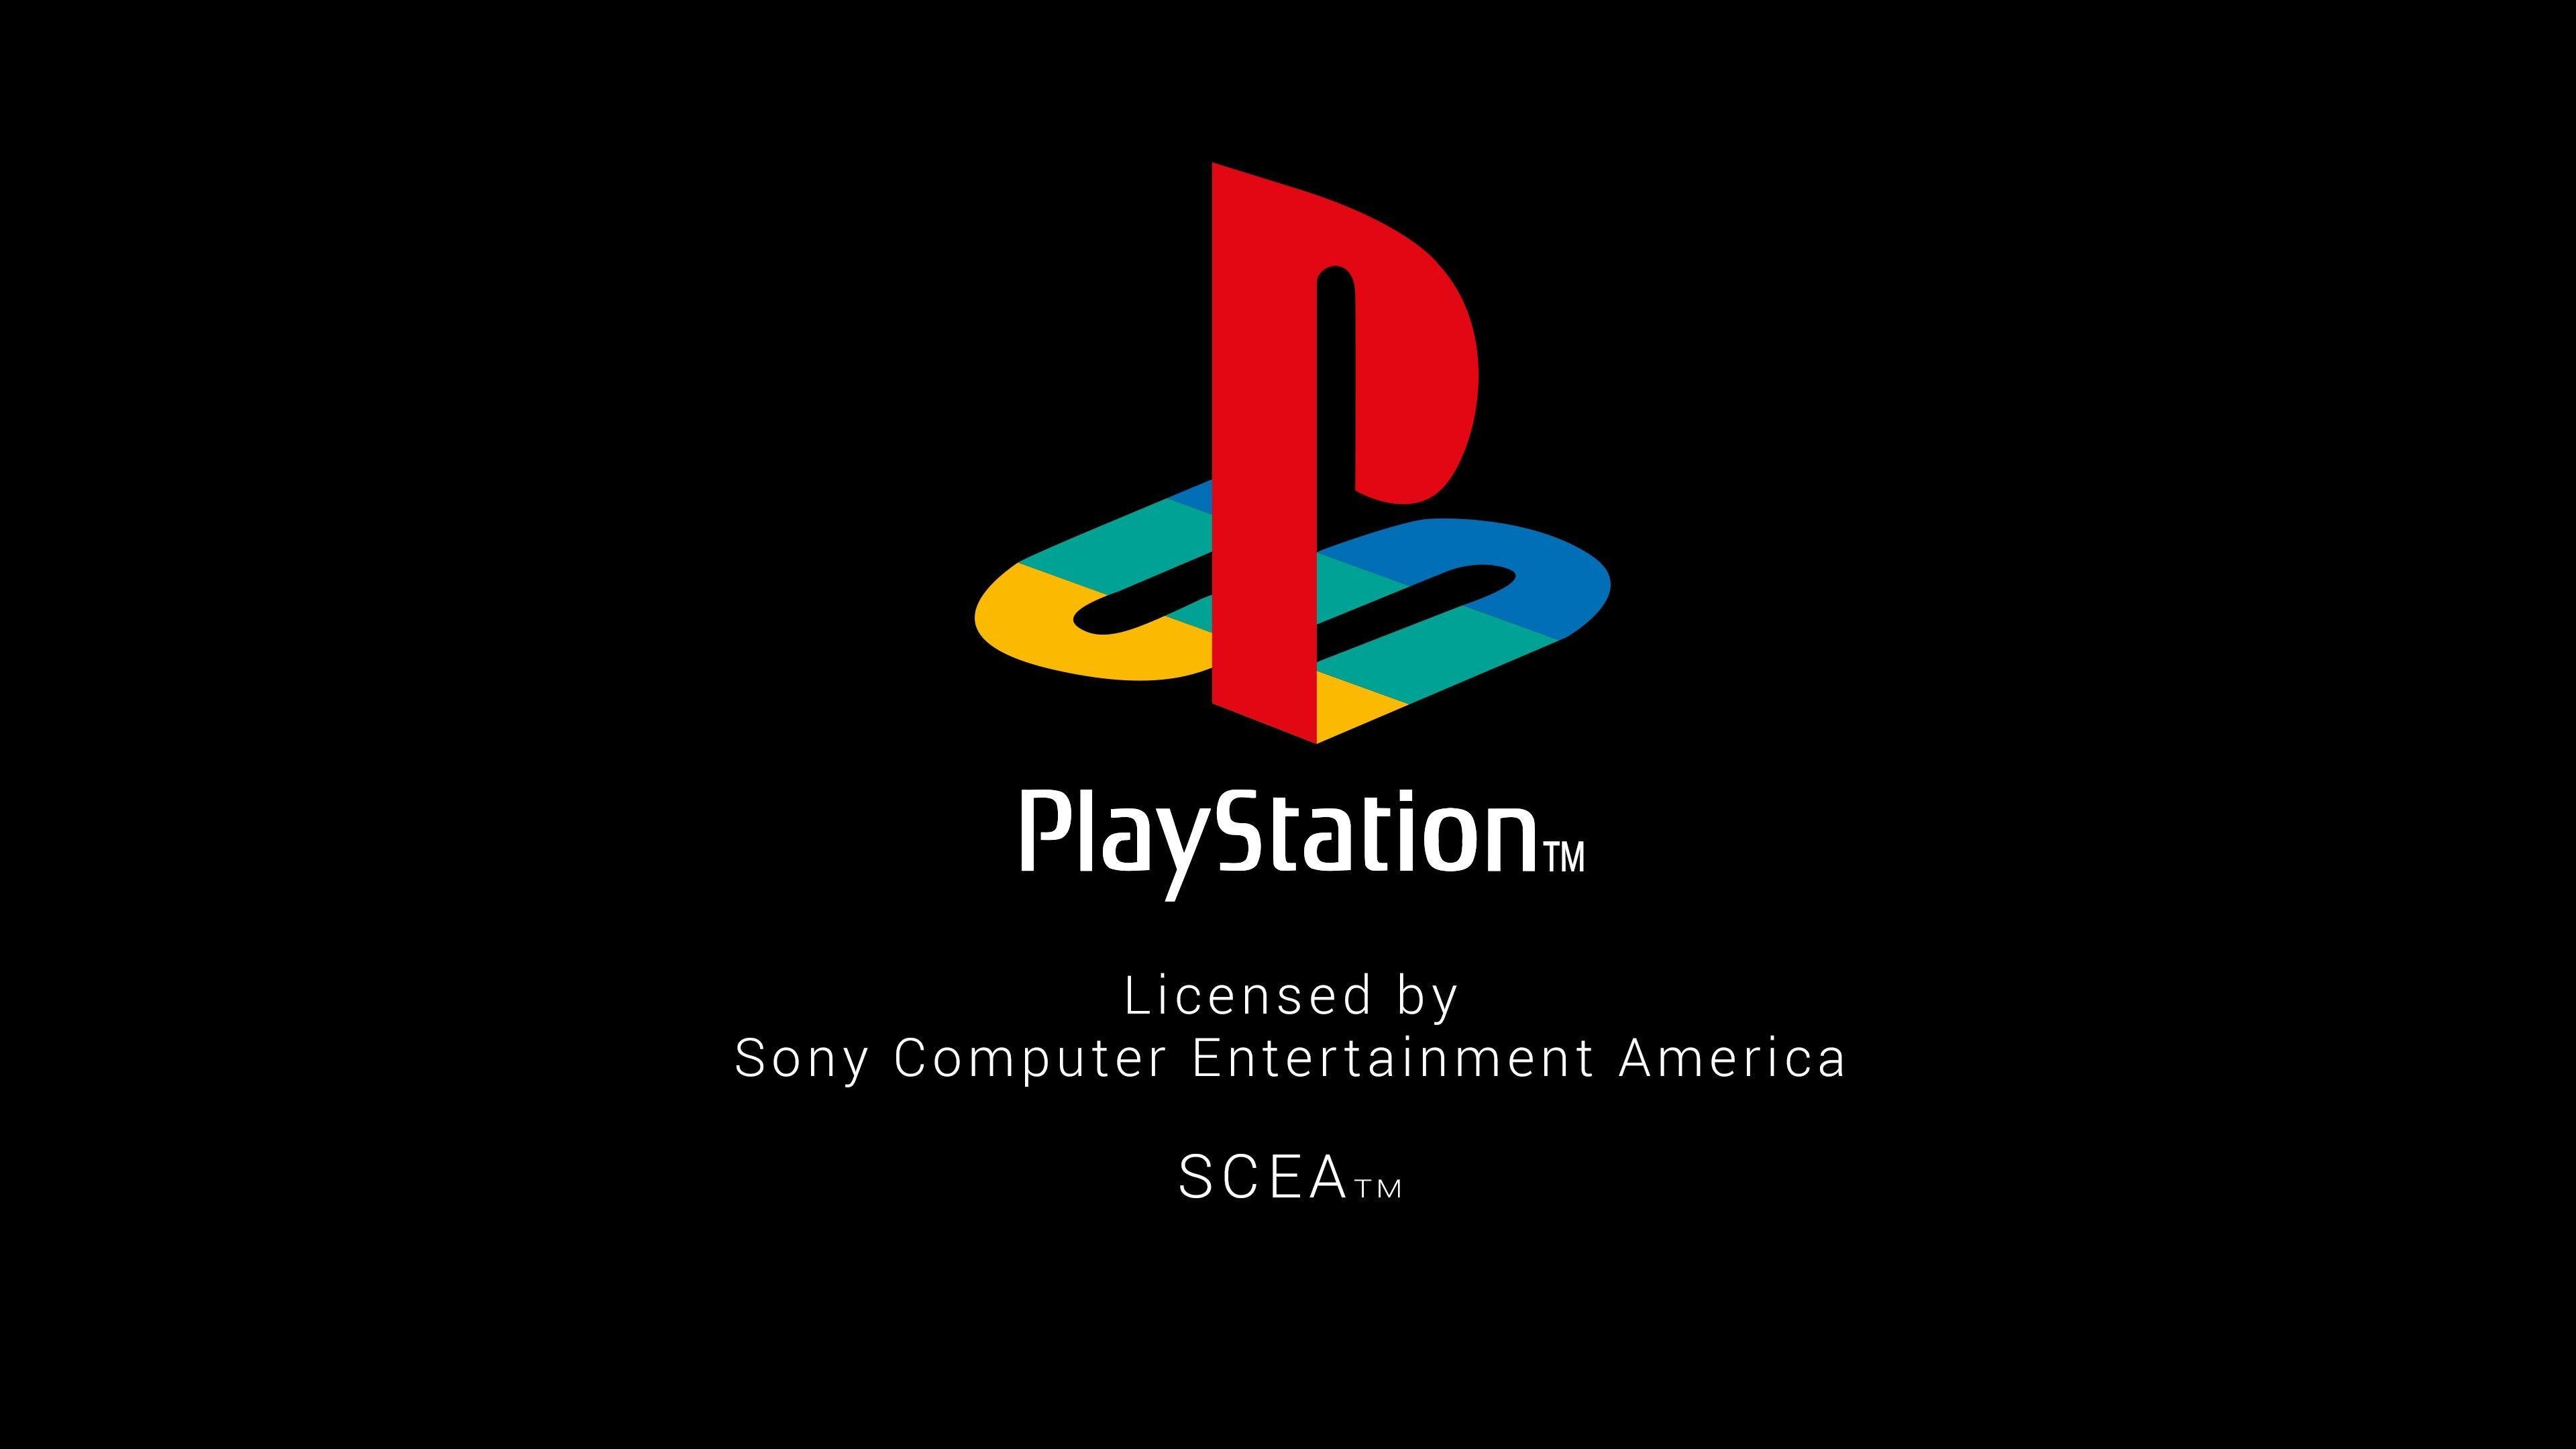 Playsation Logo - Playstation Logo Wallpaper